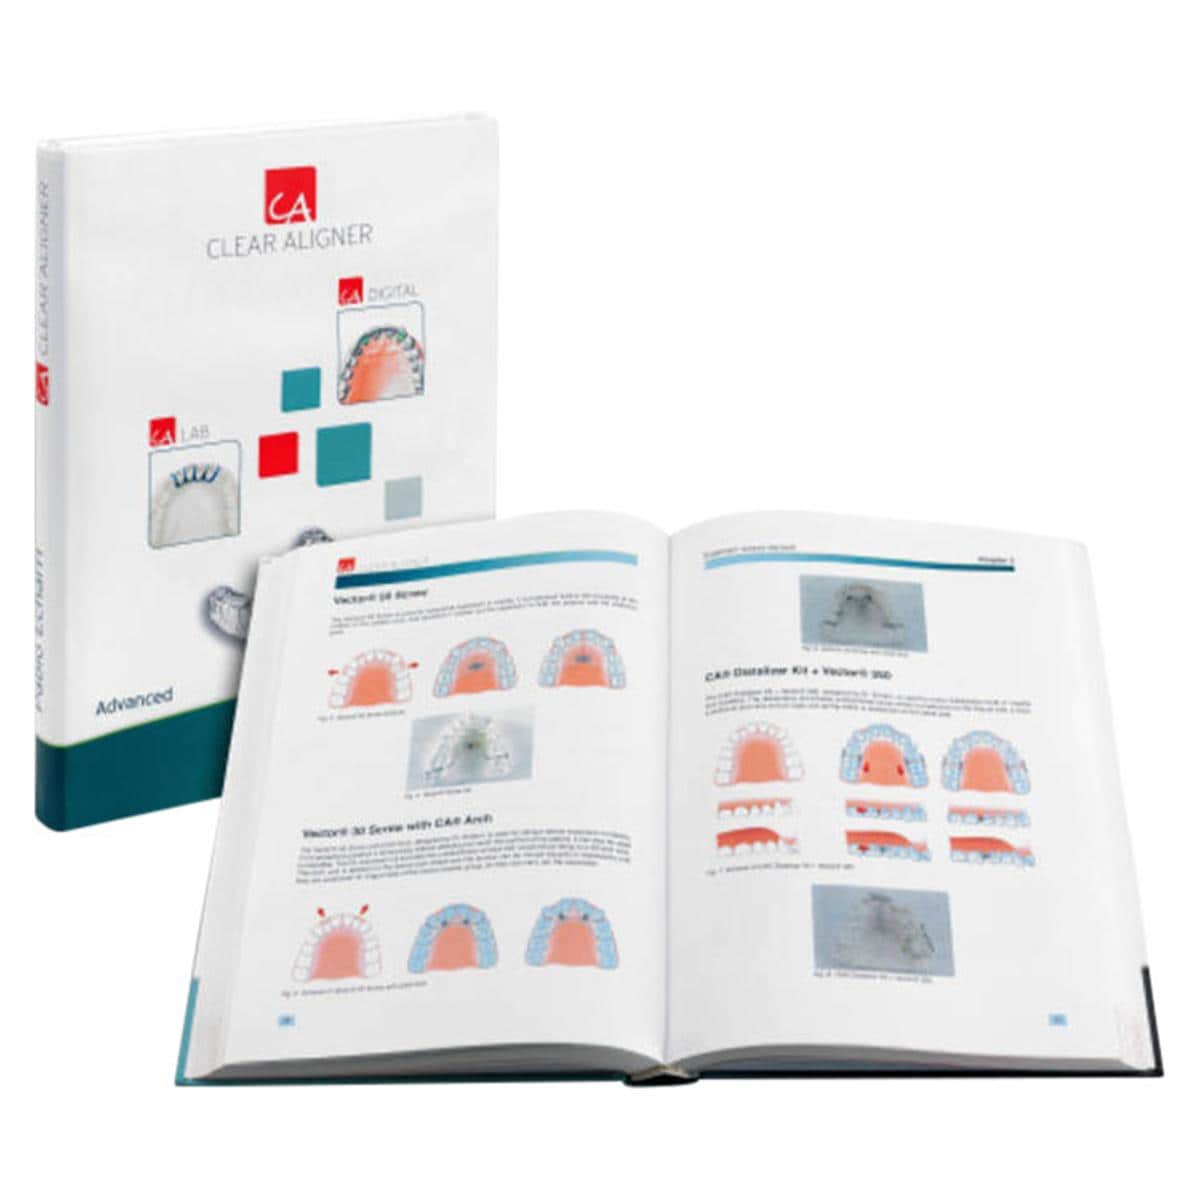 CA® Fachbuch Advanced, Band 2 - Buch